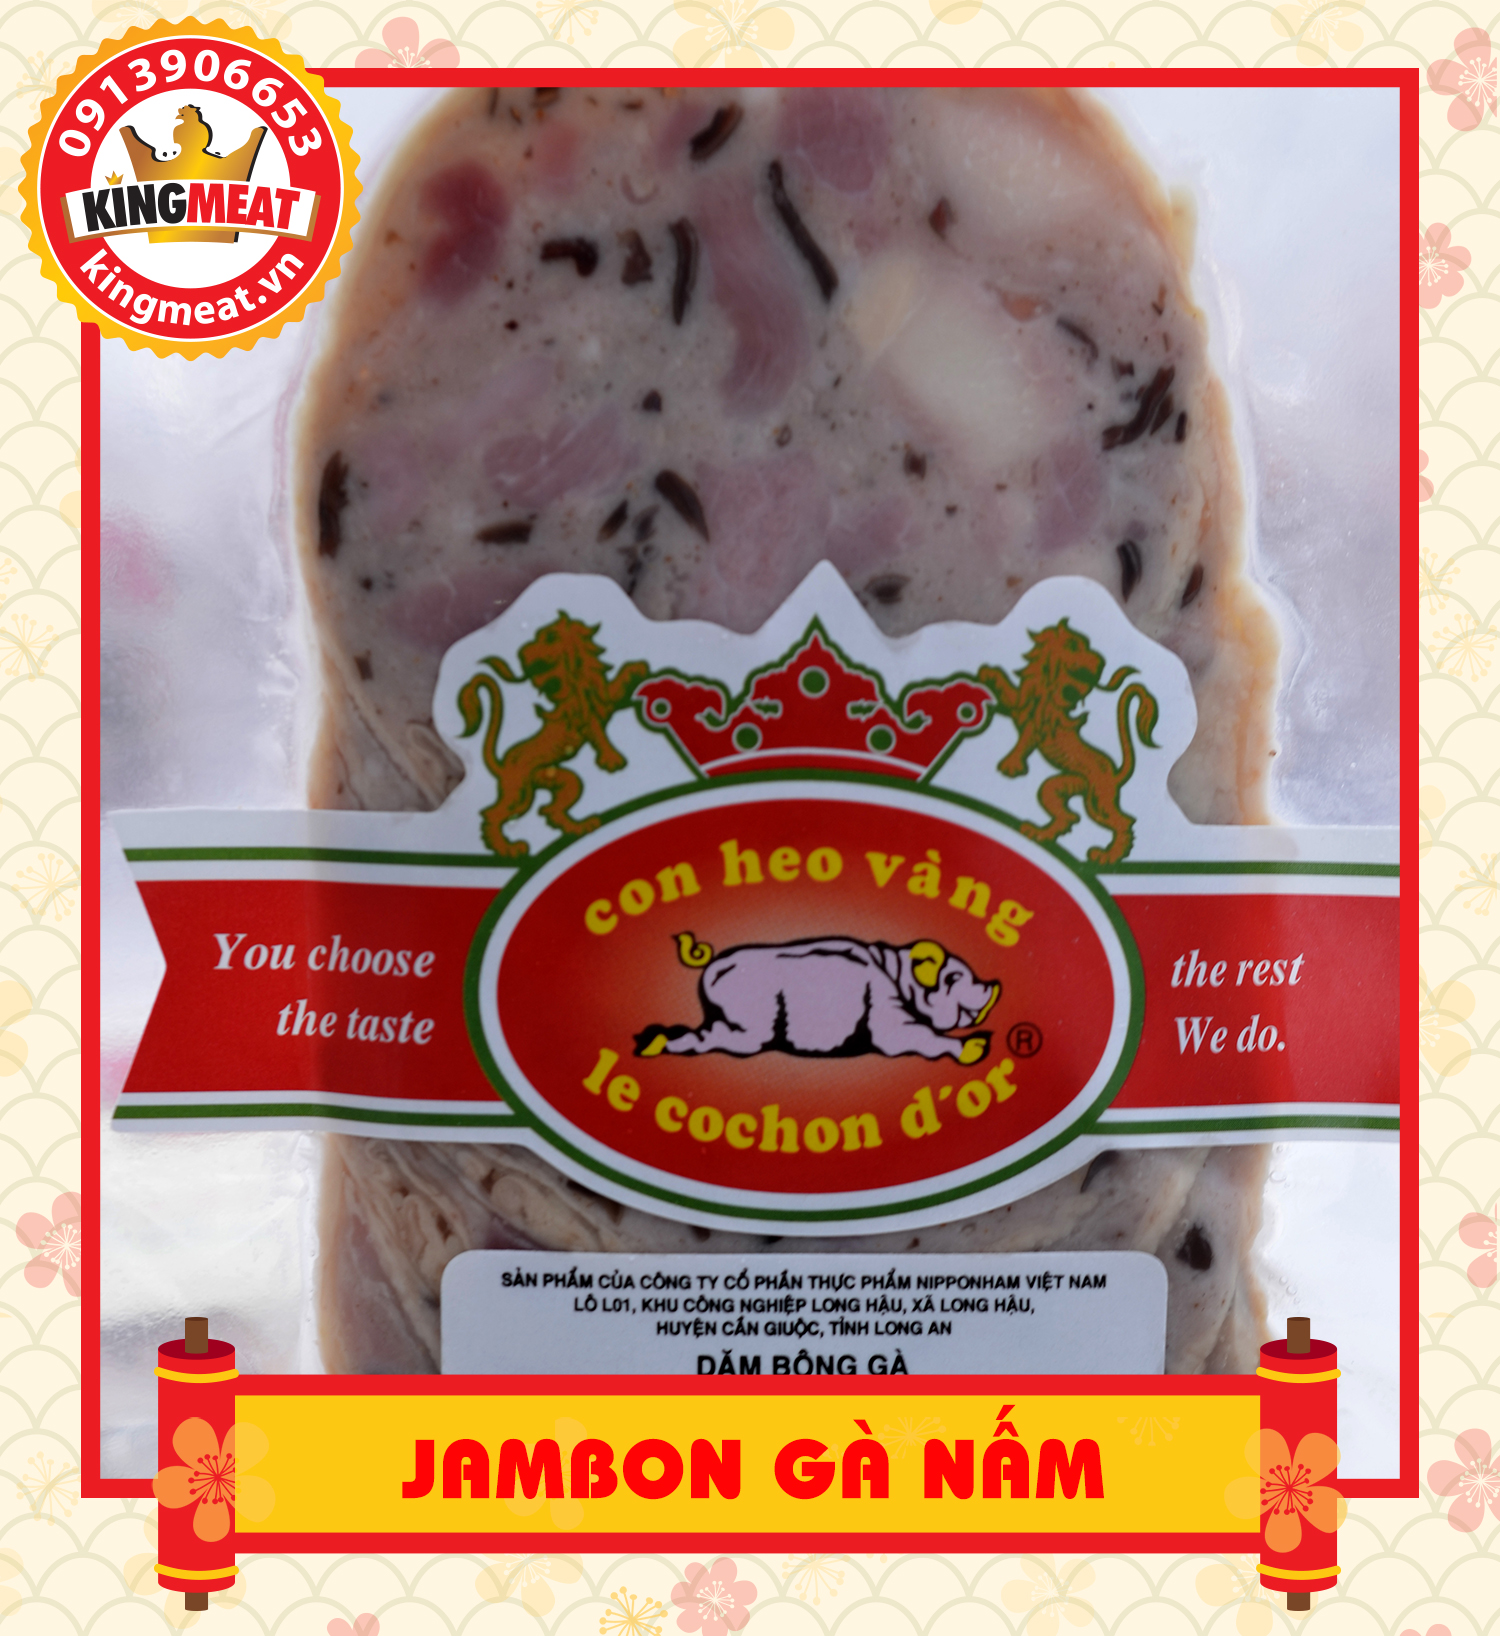 Jambon-ga-nam-02